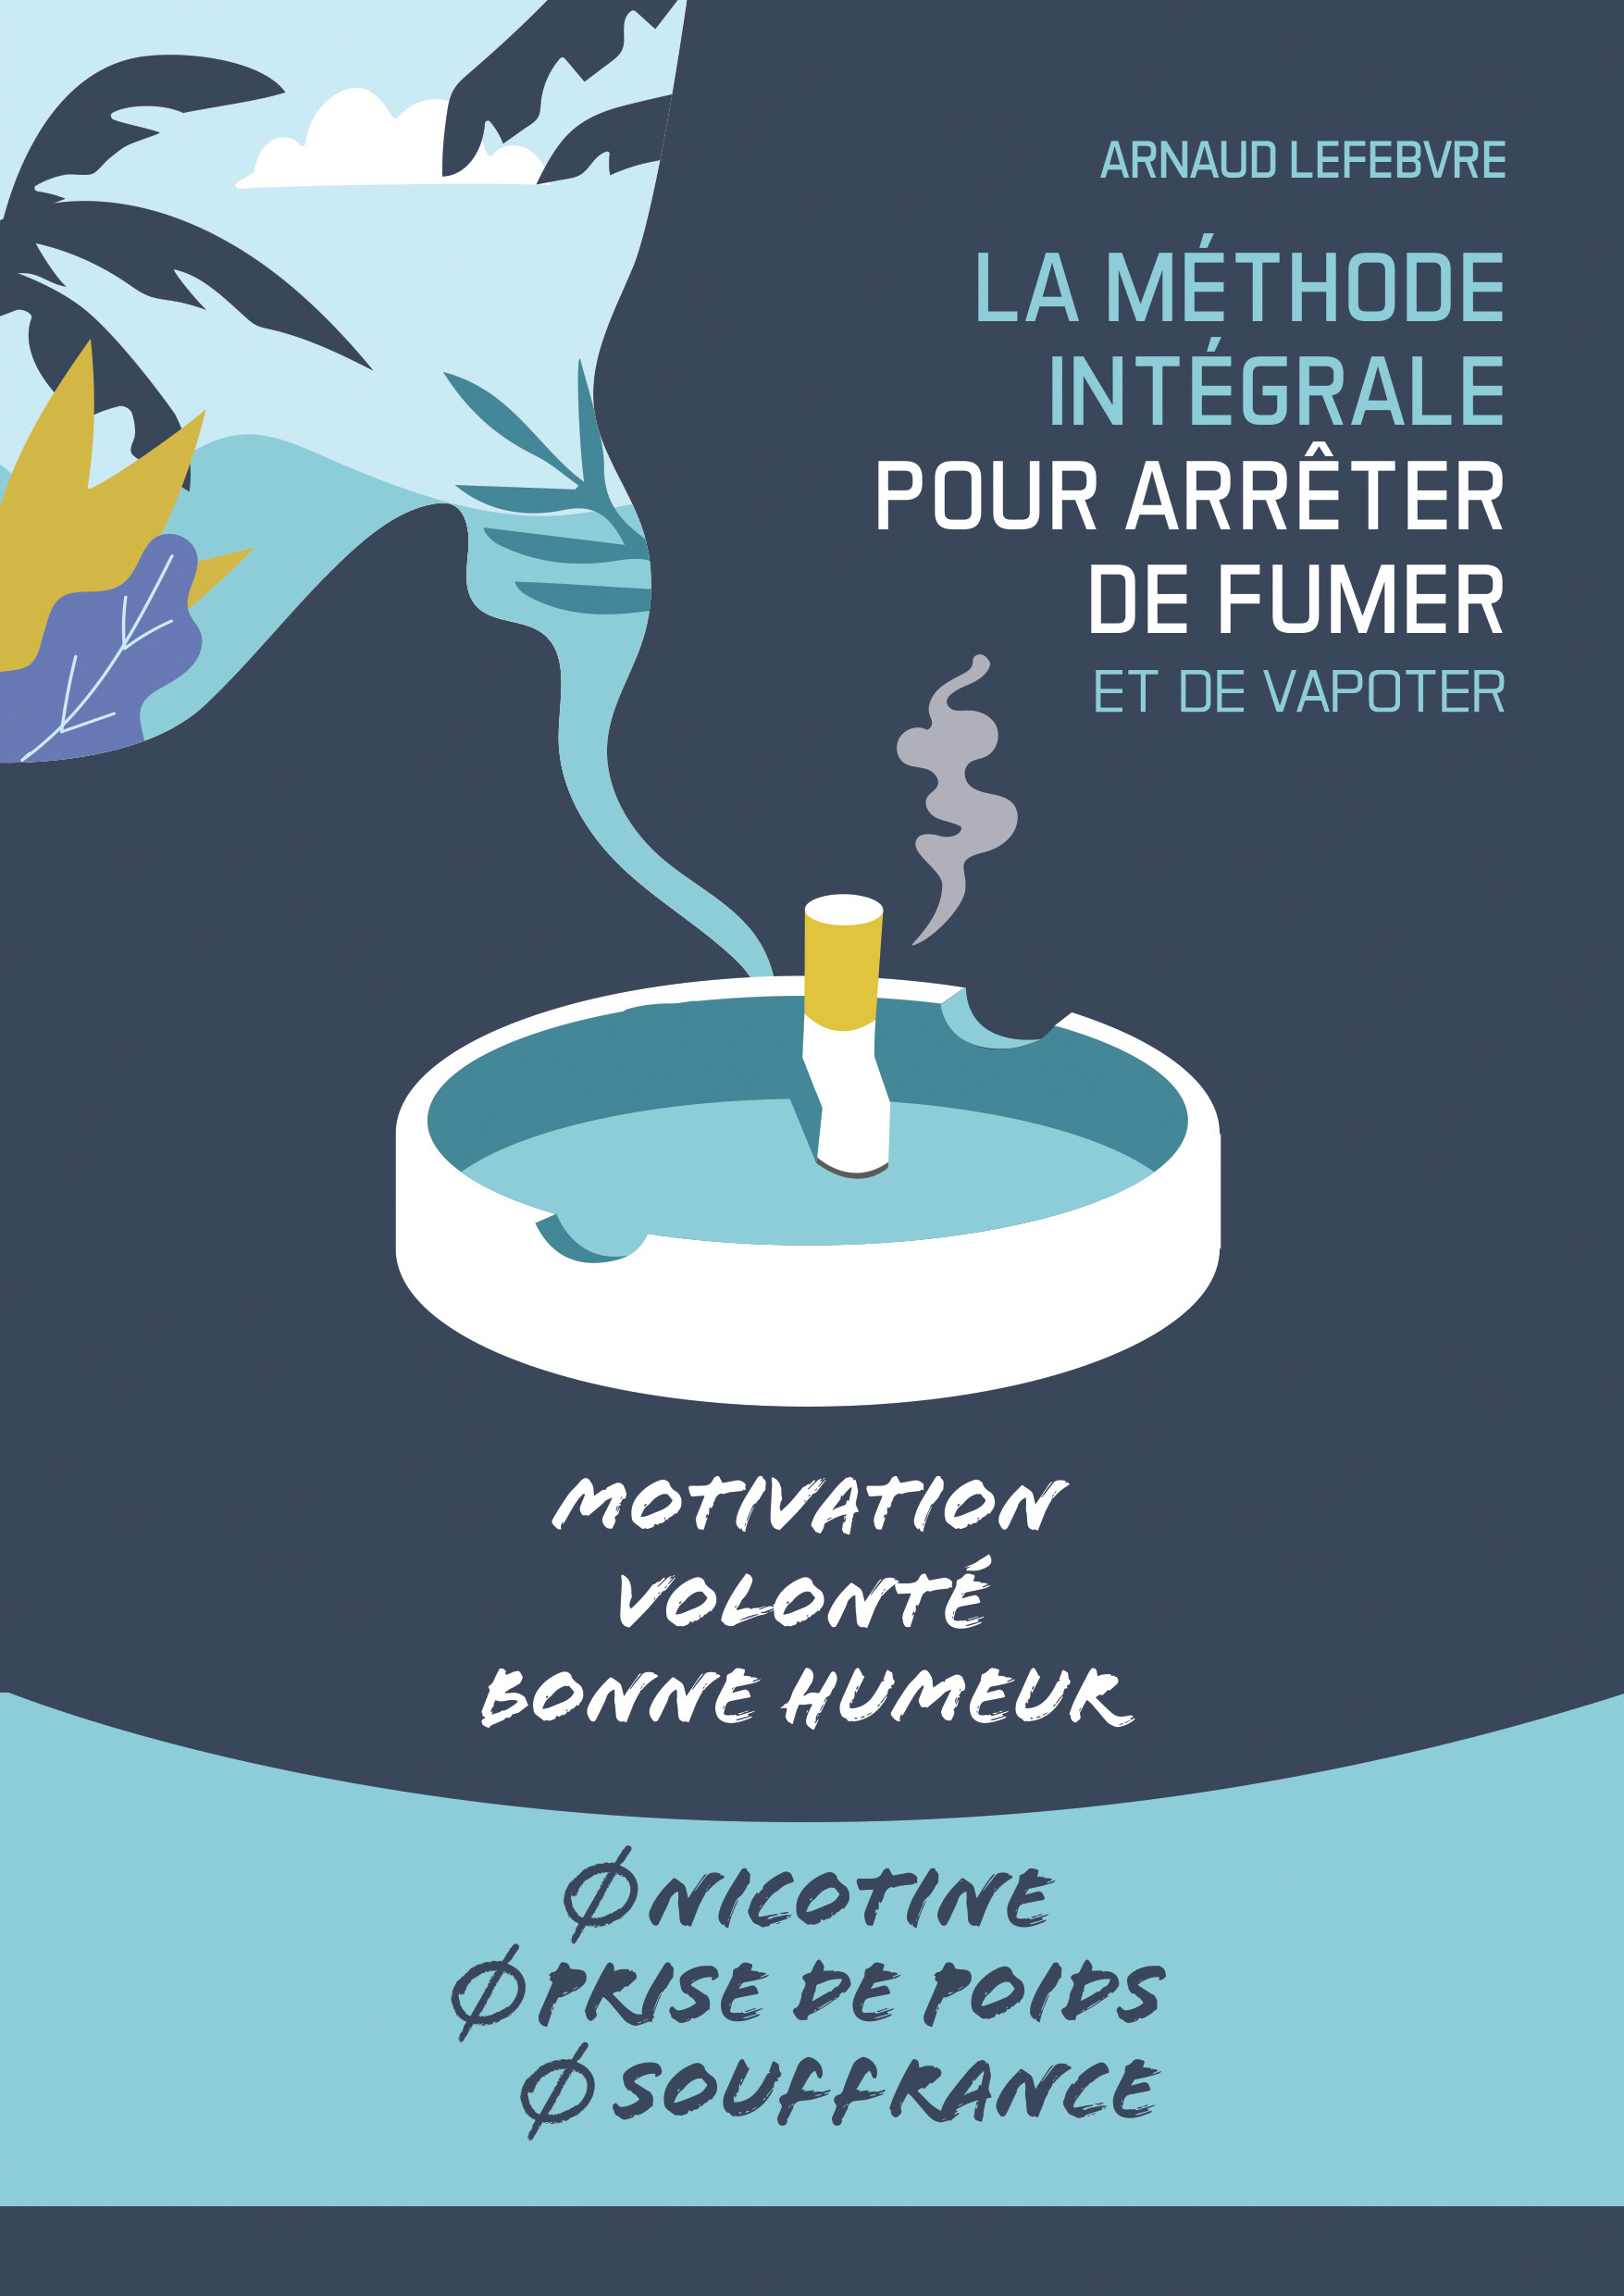 La Méthode Intégrale pour arrêter de fumer - Arnaud Lefebvre